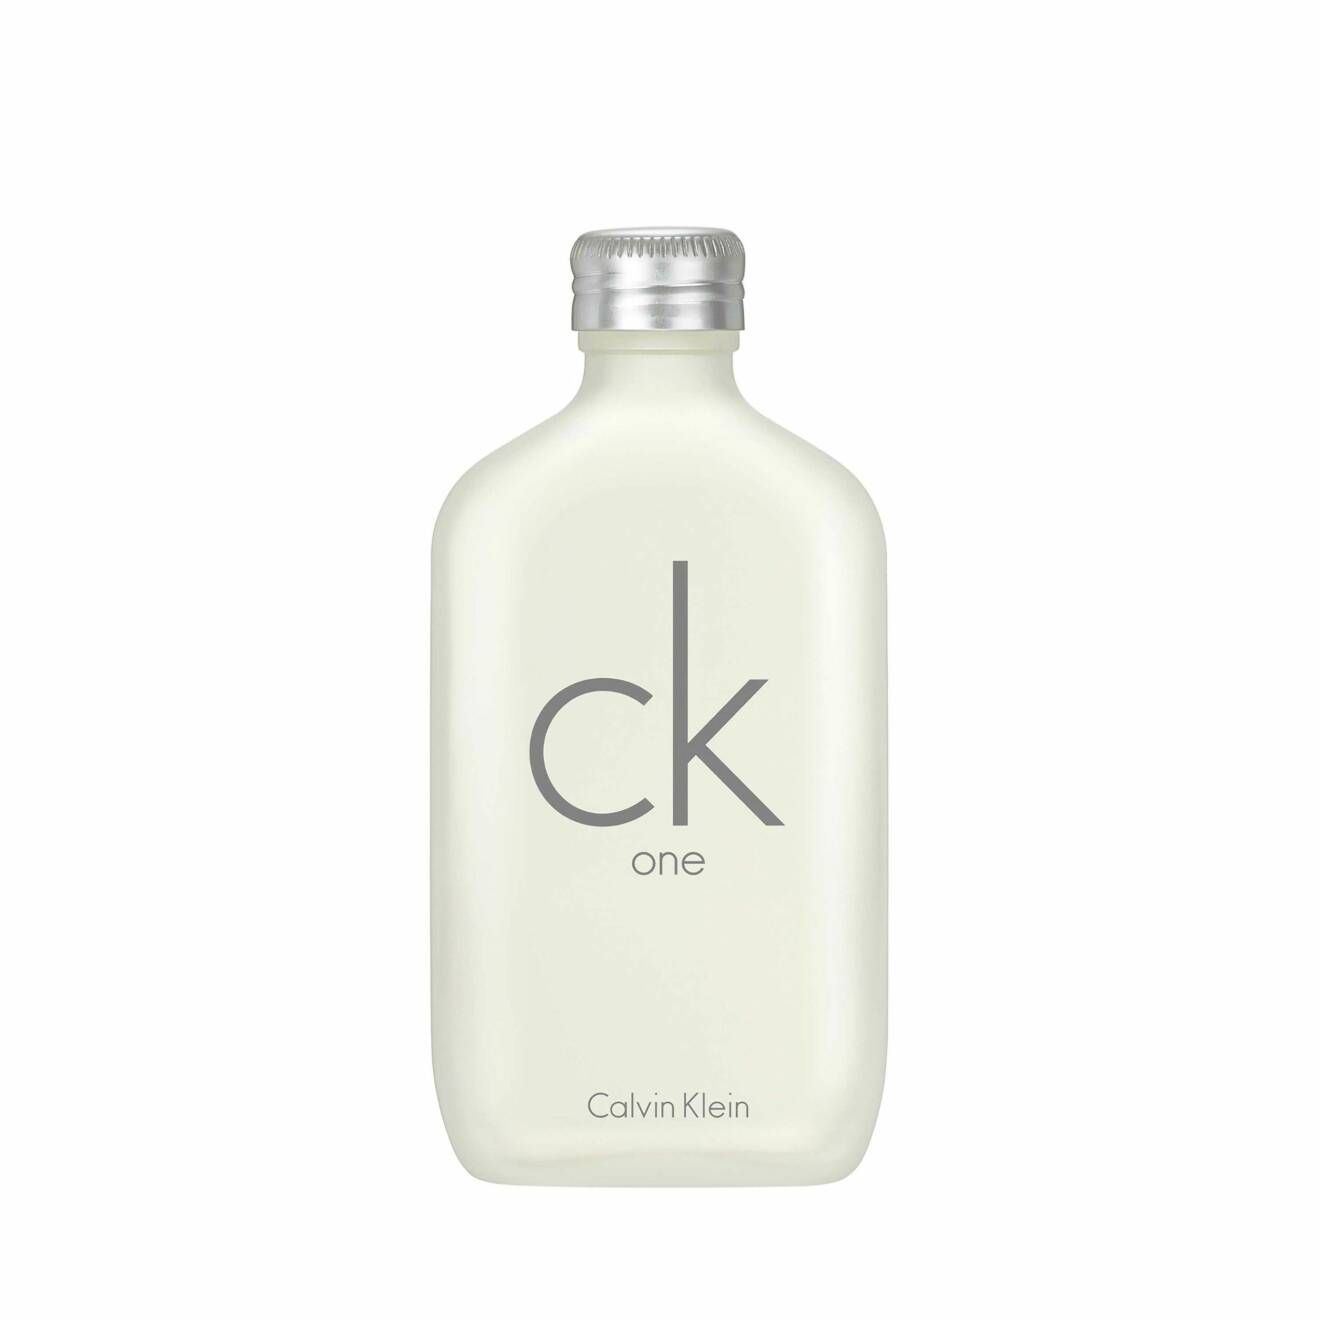 cK One från Calvin Klein.